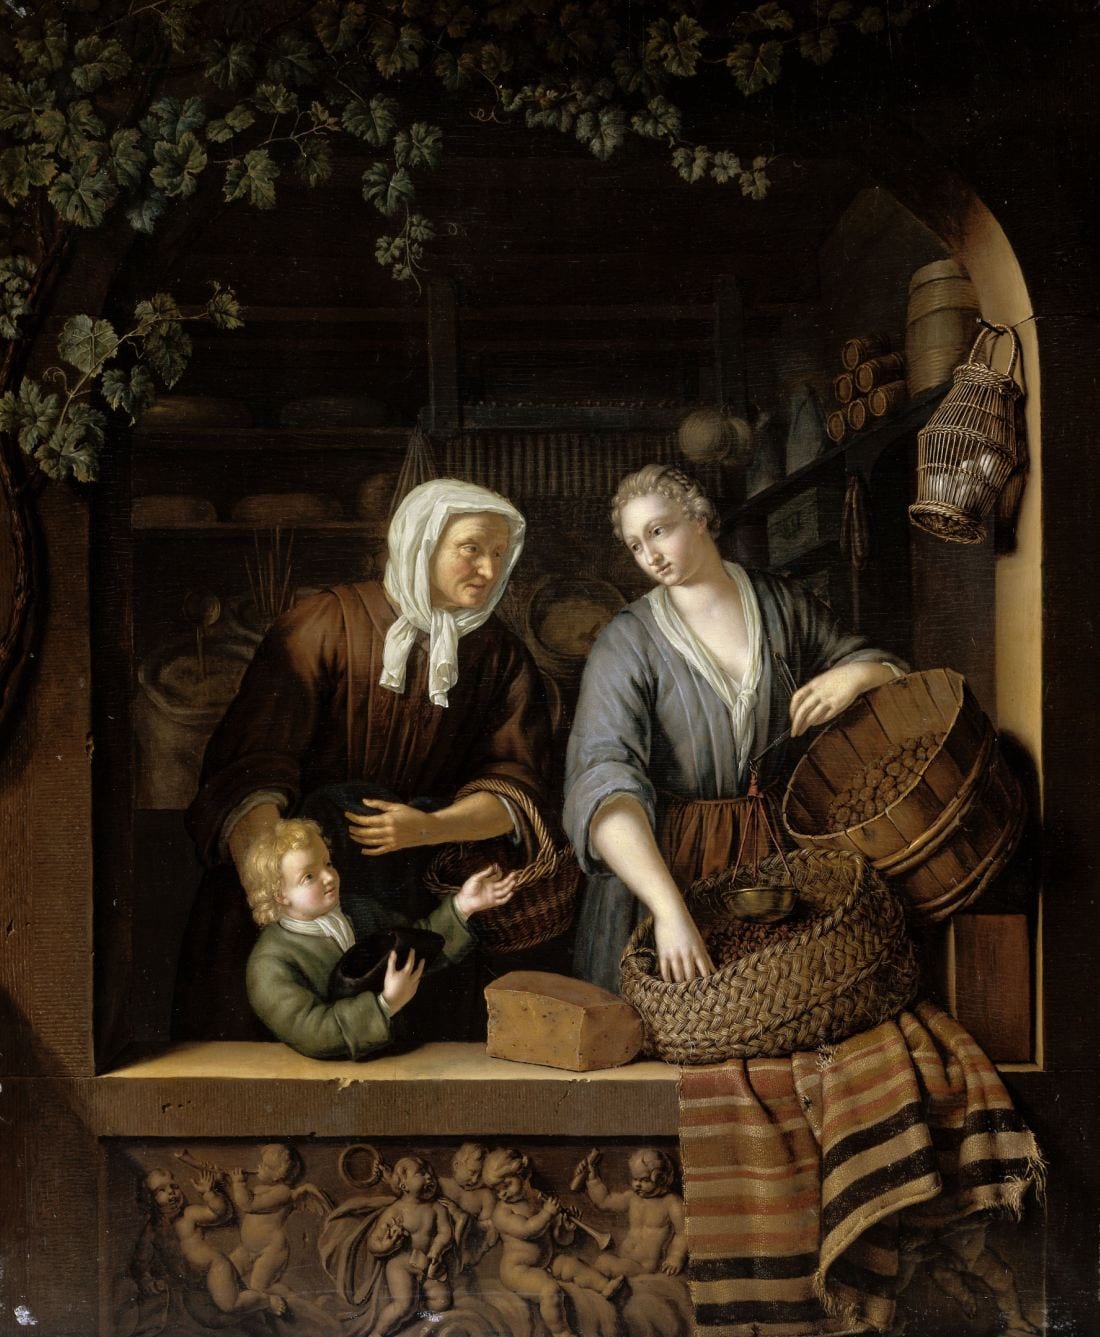 Het volledige schilderij De Kruidenierster van Frans van Mieris